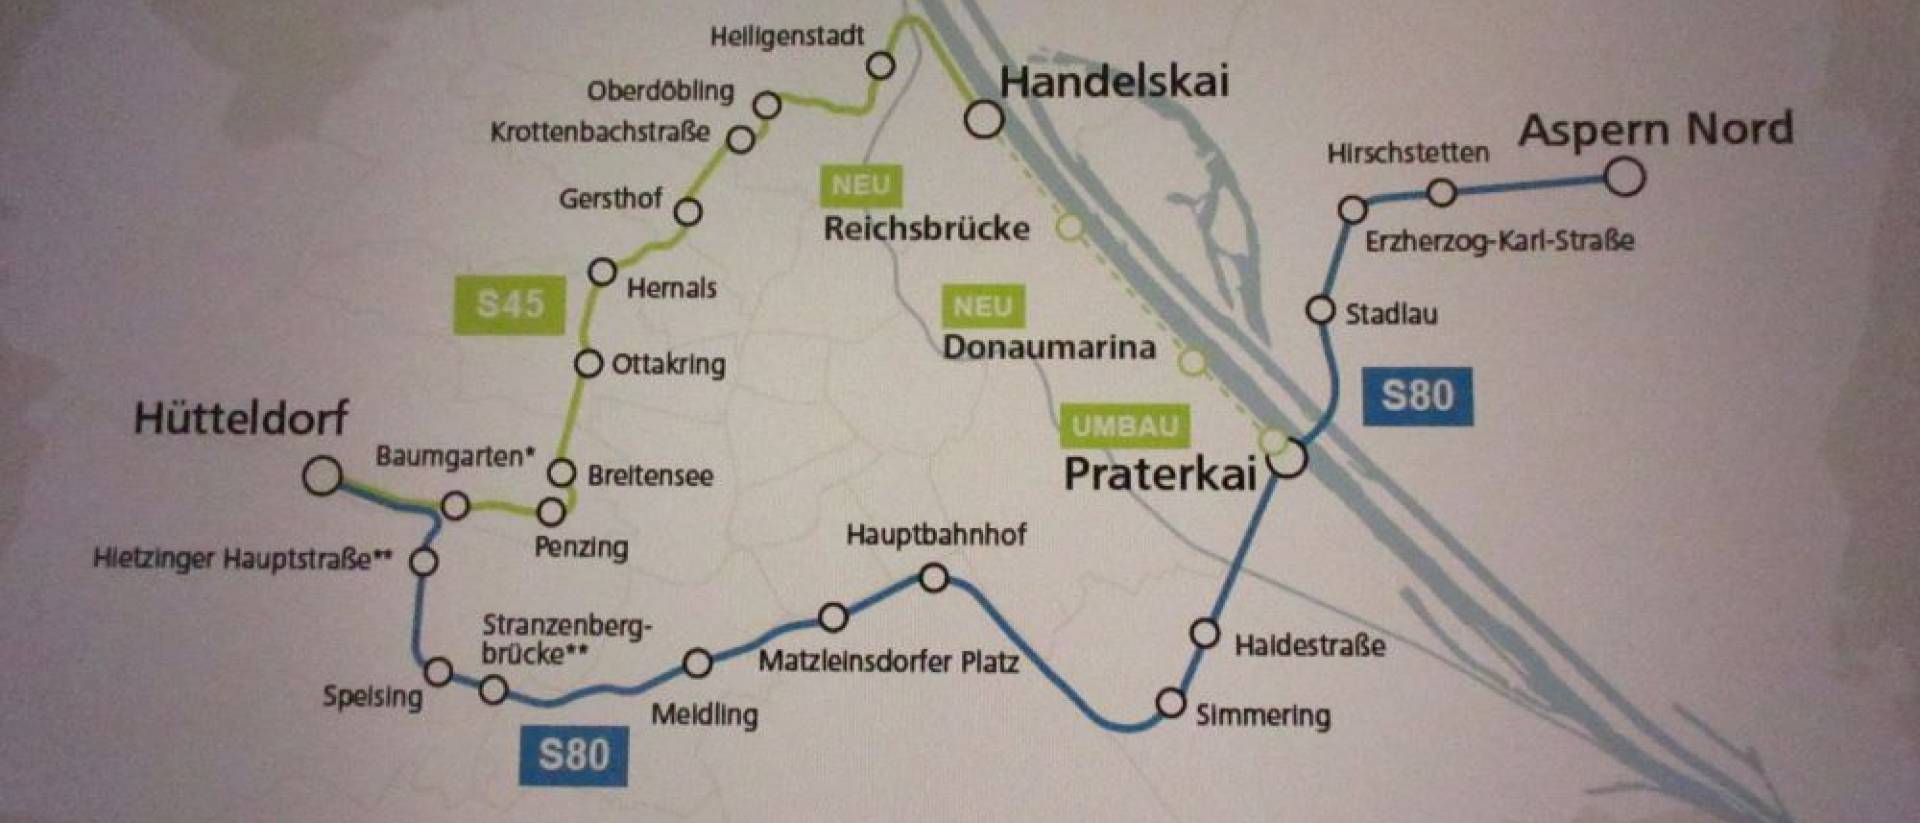 Halbwarmer "S-Bahn-Ring" Wien